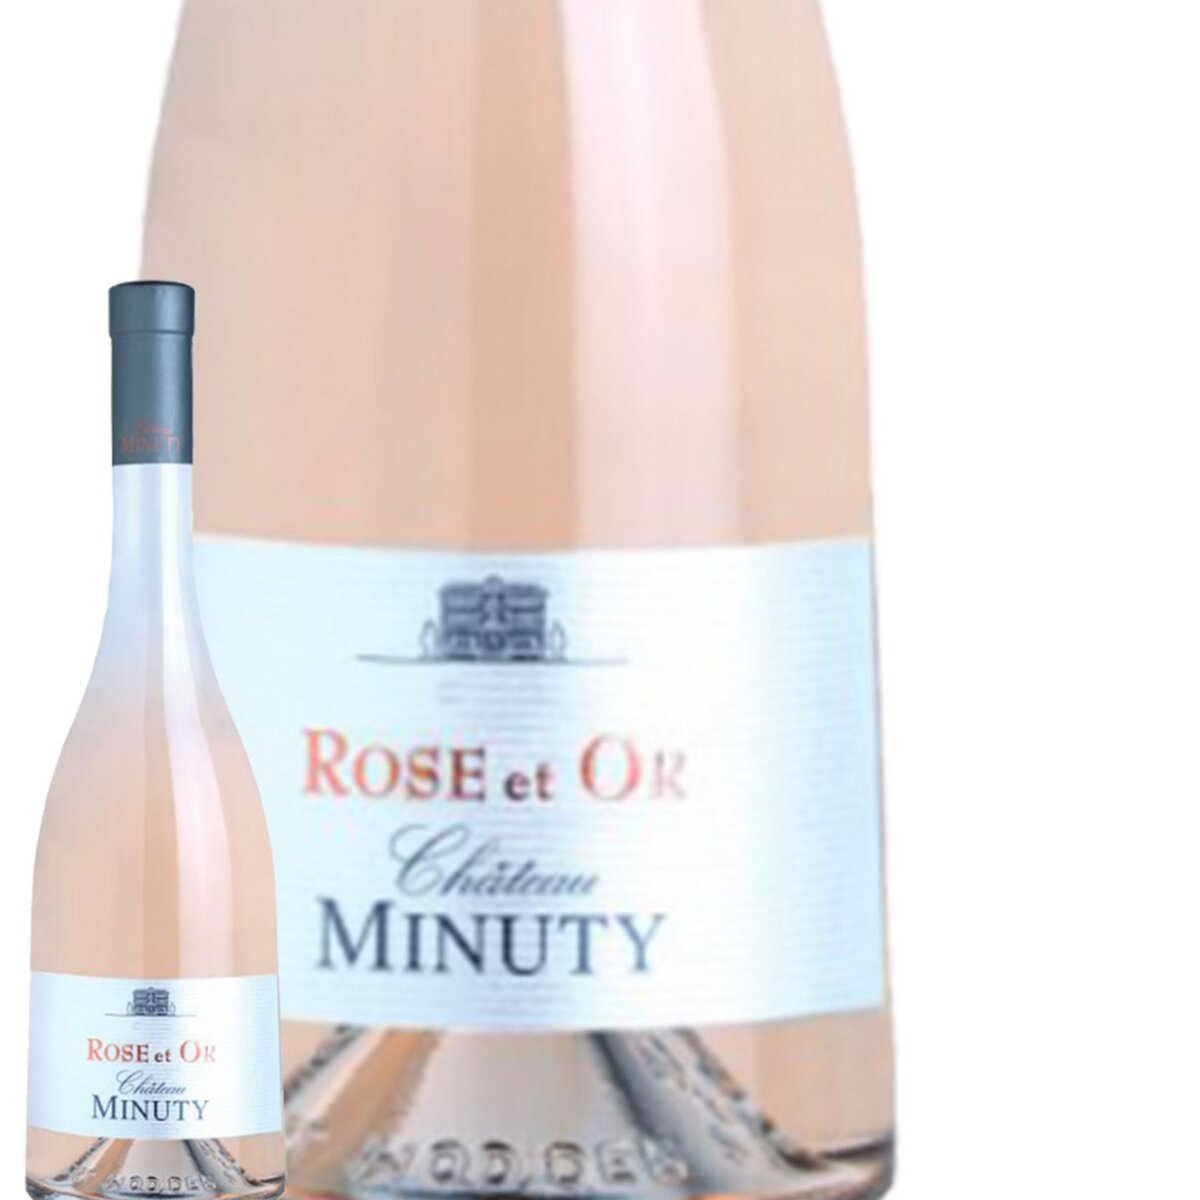 Château Minuty Cuvée Rosé et Or Côtes de Provence Rosé 2015